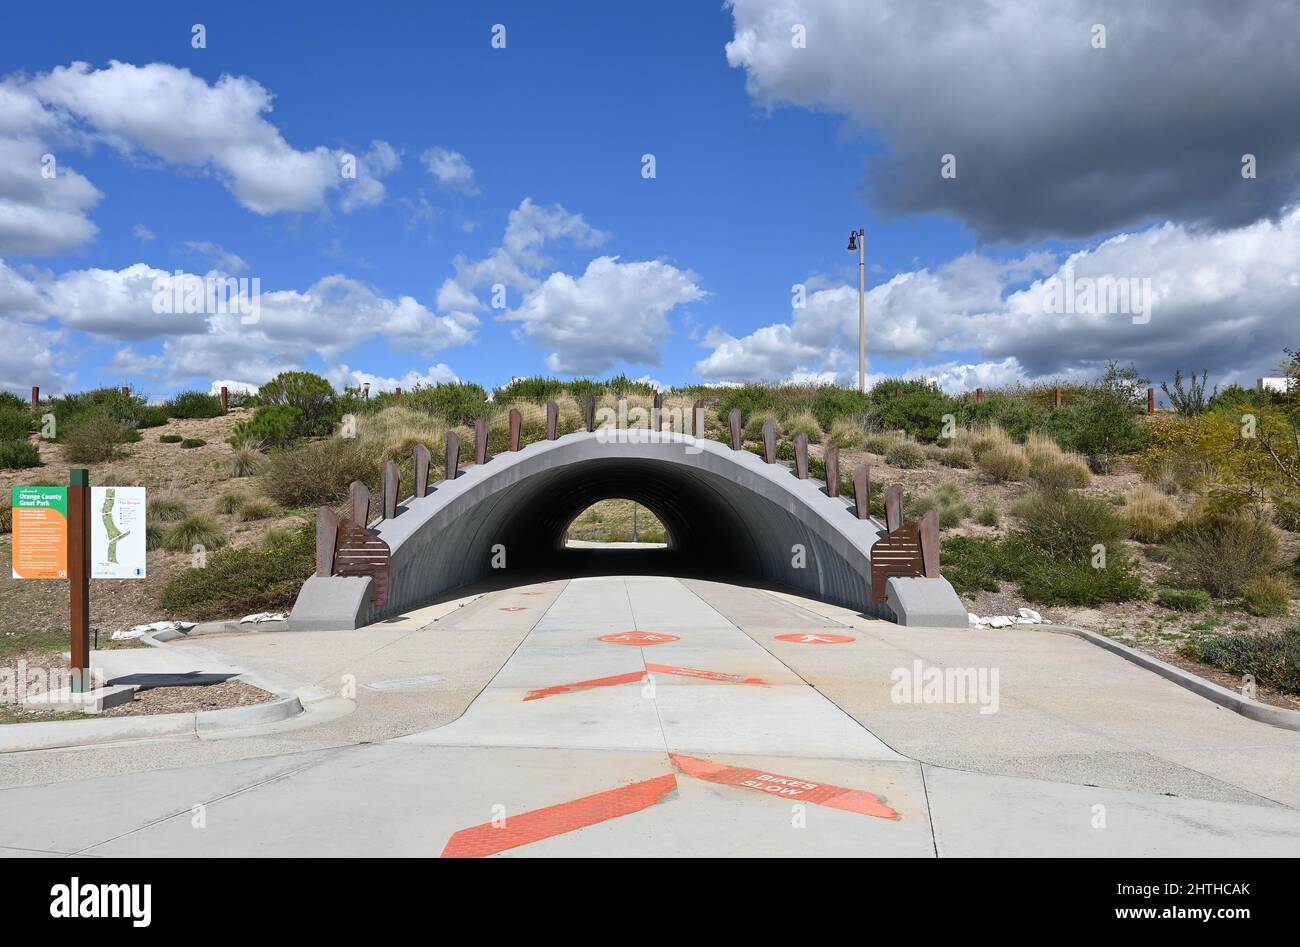 IRVINE, CALIFORNIE - 23 FÉVRIER 2022 : passage souterrain du tunnel dans la région de Bosque, dans le grand parc du comté d'Orange. Banque D'Images